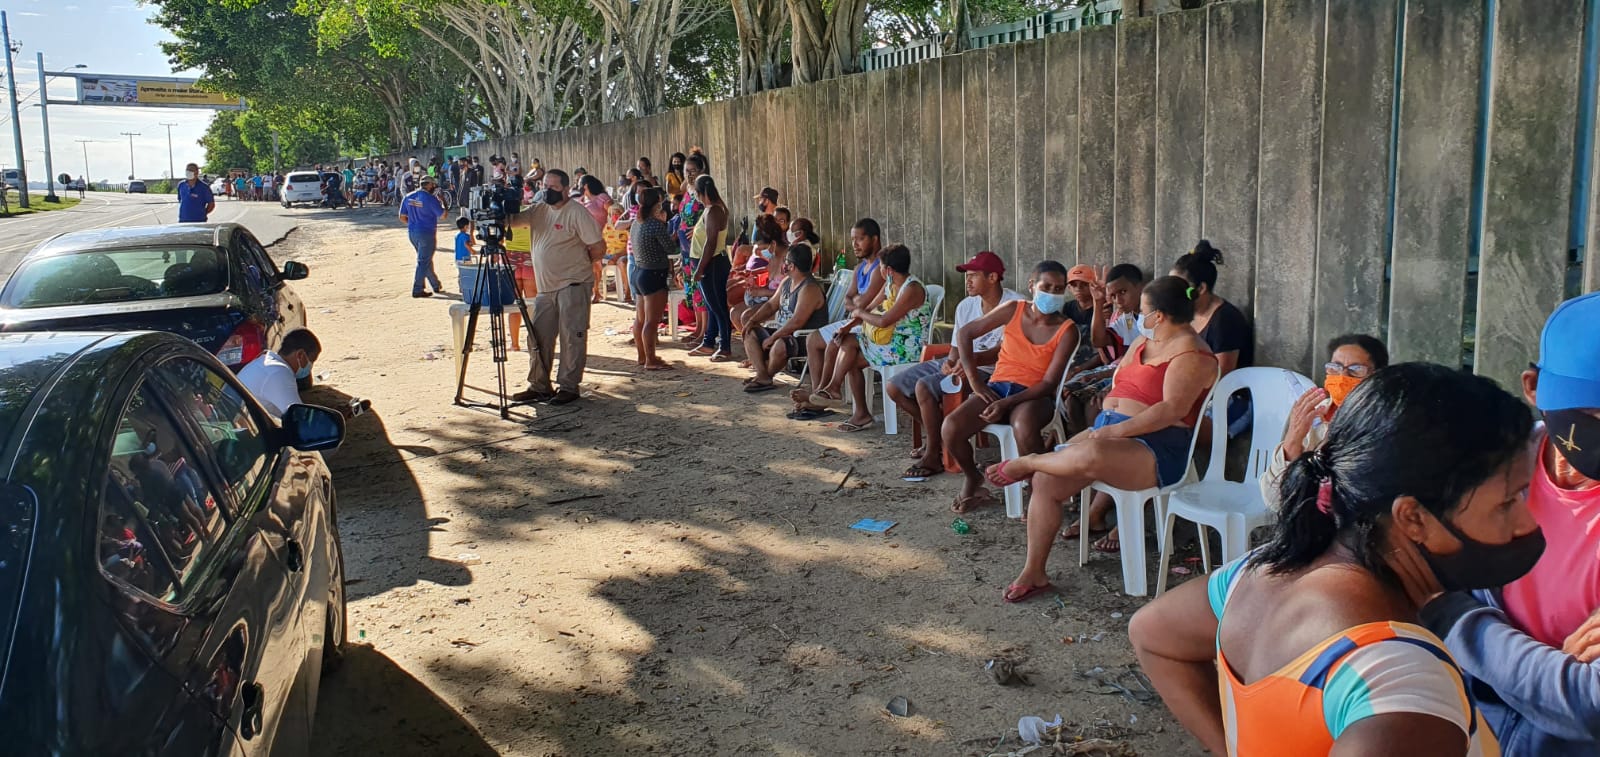 Antes do horário de a distribuição começar, a fila já contava com cerca de 150 pessoas, segundo o Sindipetro; a distribuição ocorre em apenas um ponto do município